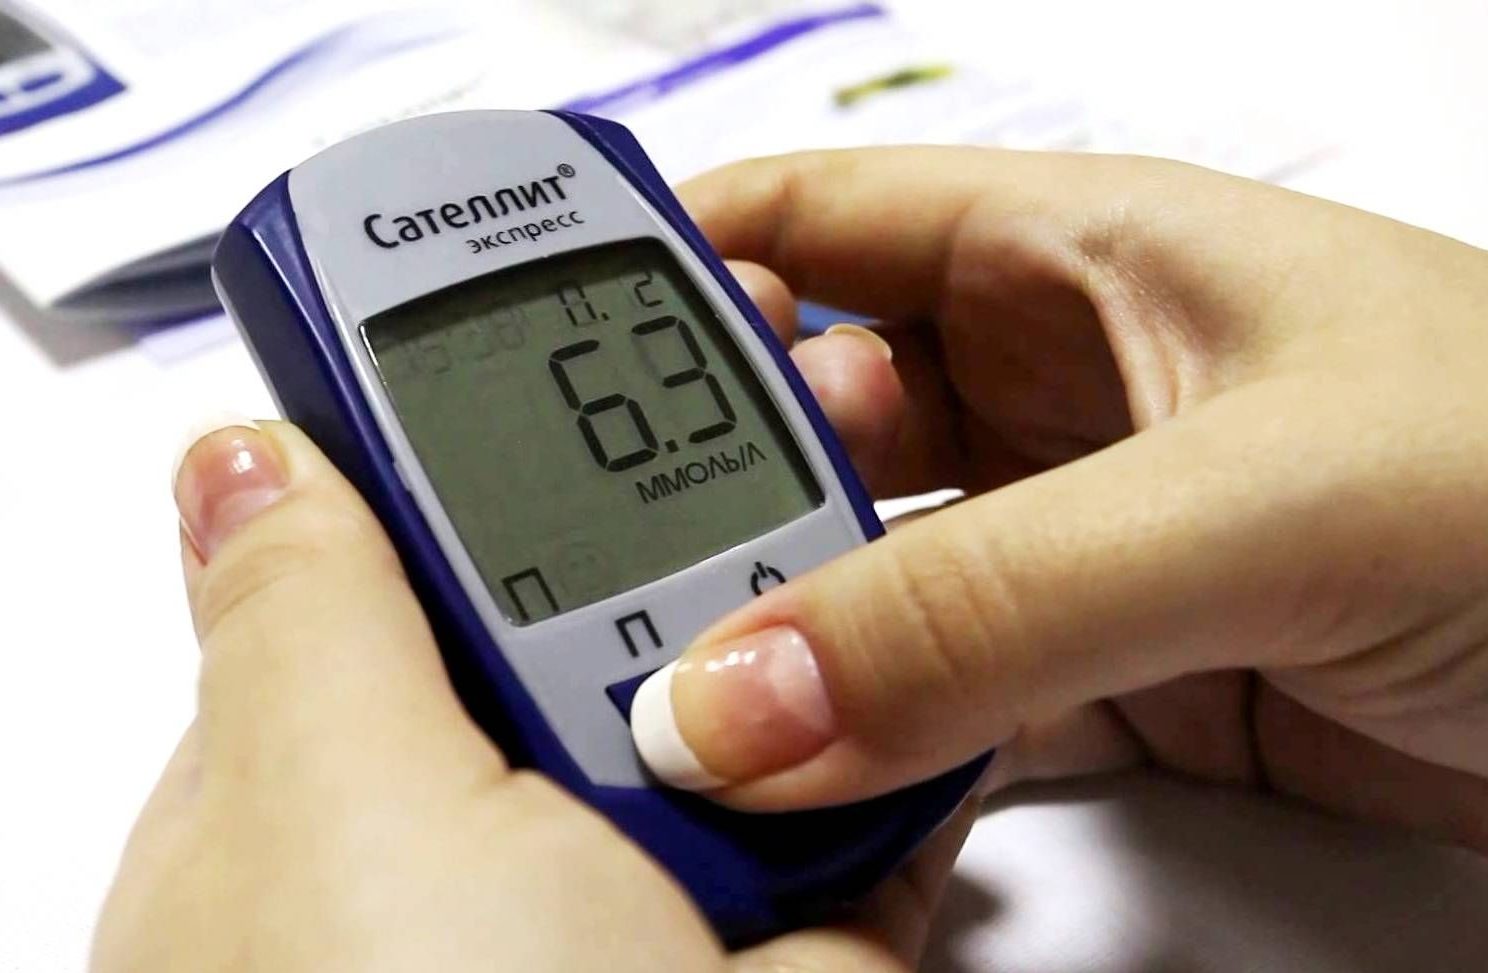 Узнай уровень сахара и холестерина совершенно бесплатно! Сегодня в ТРК «Слава» принимают врачи